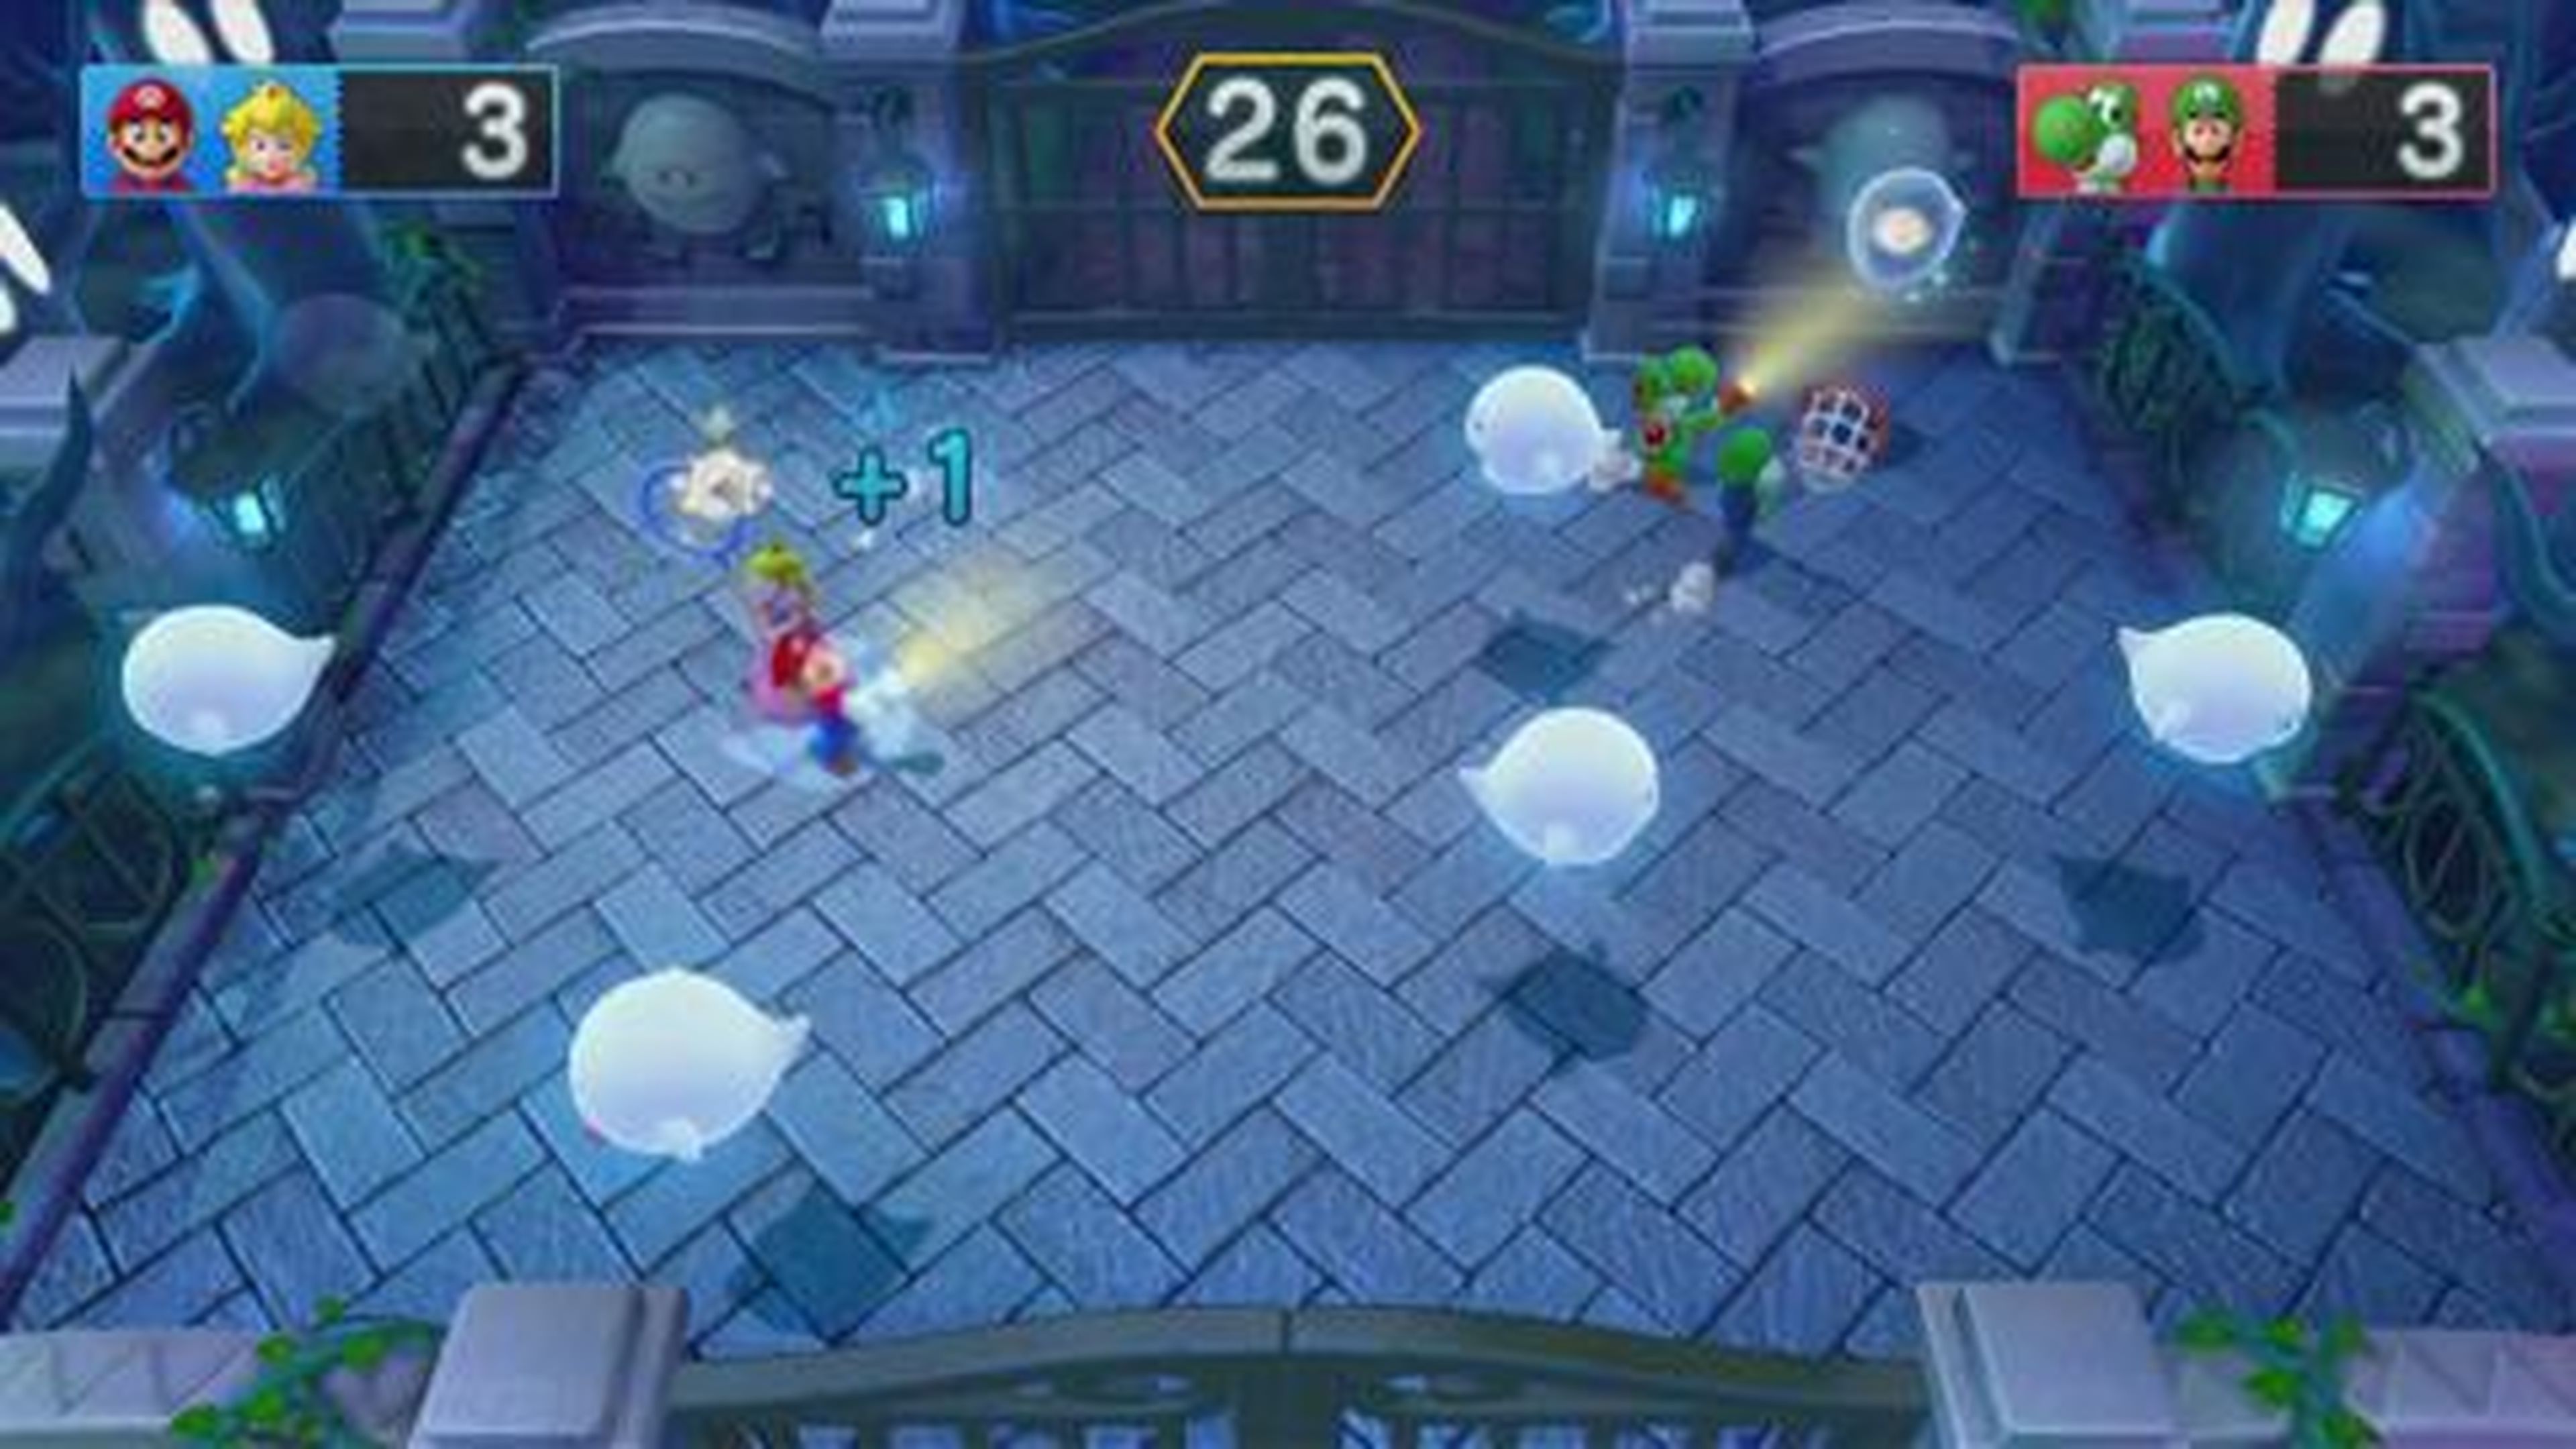 Mario Party 10 - Minijuego - Boos ricachones (Wii U)